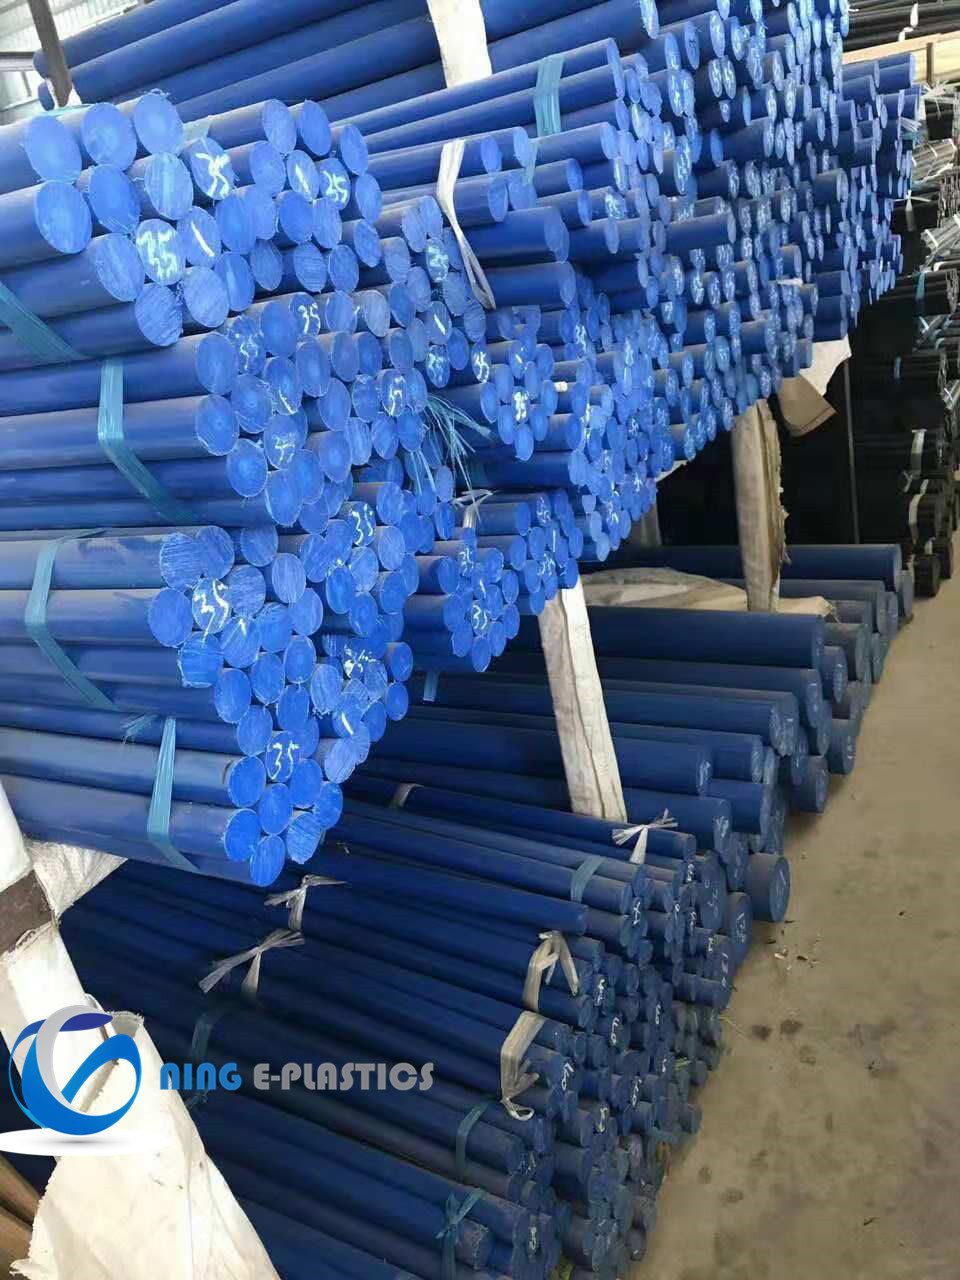 Casting Nylon Rod in Blue Colour